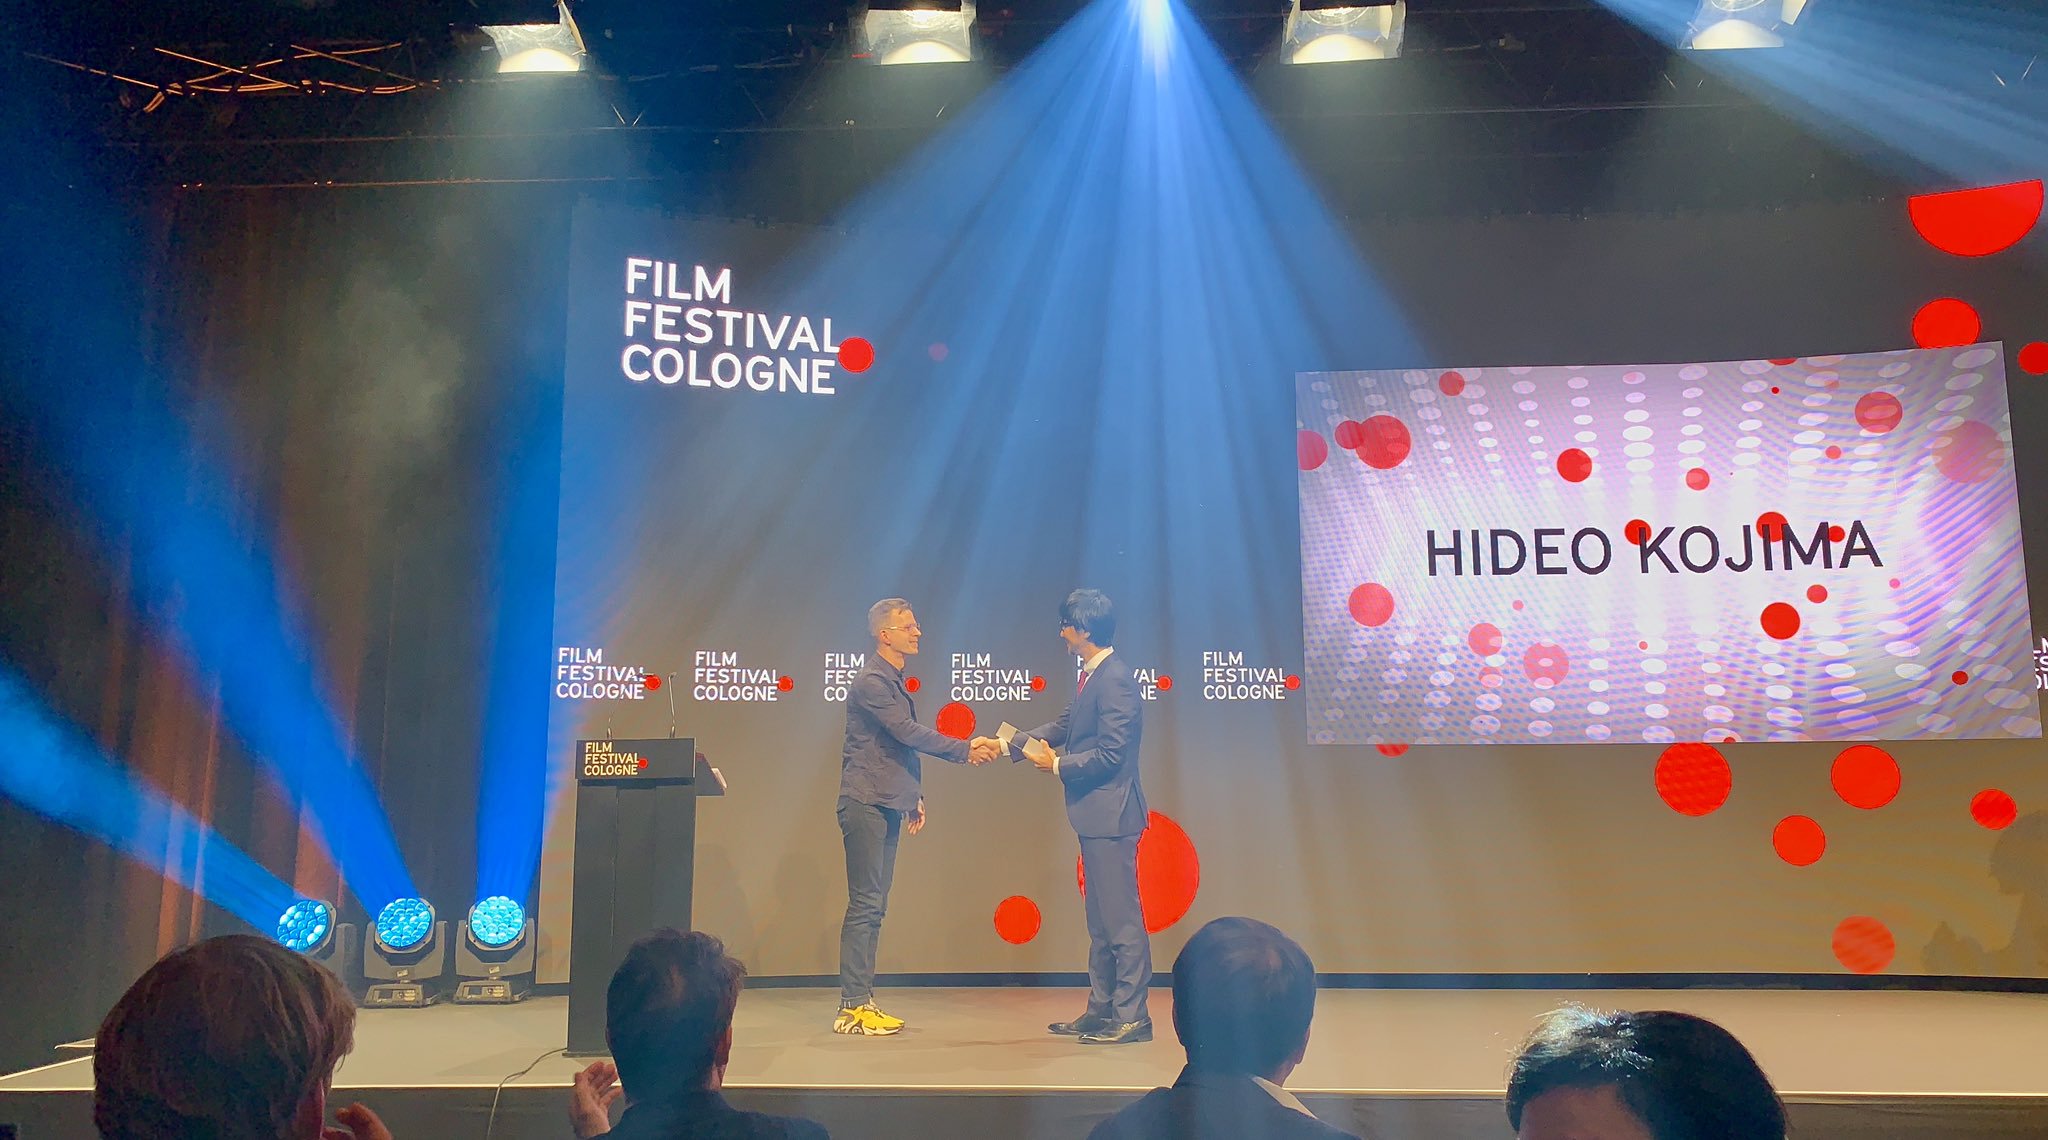 小岛秀夫获科隆电影节创意奖：“他改变了游戏产业”